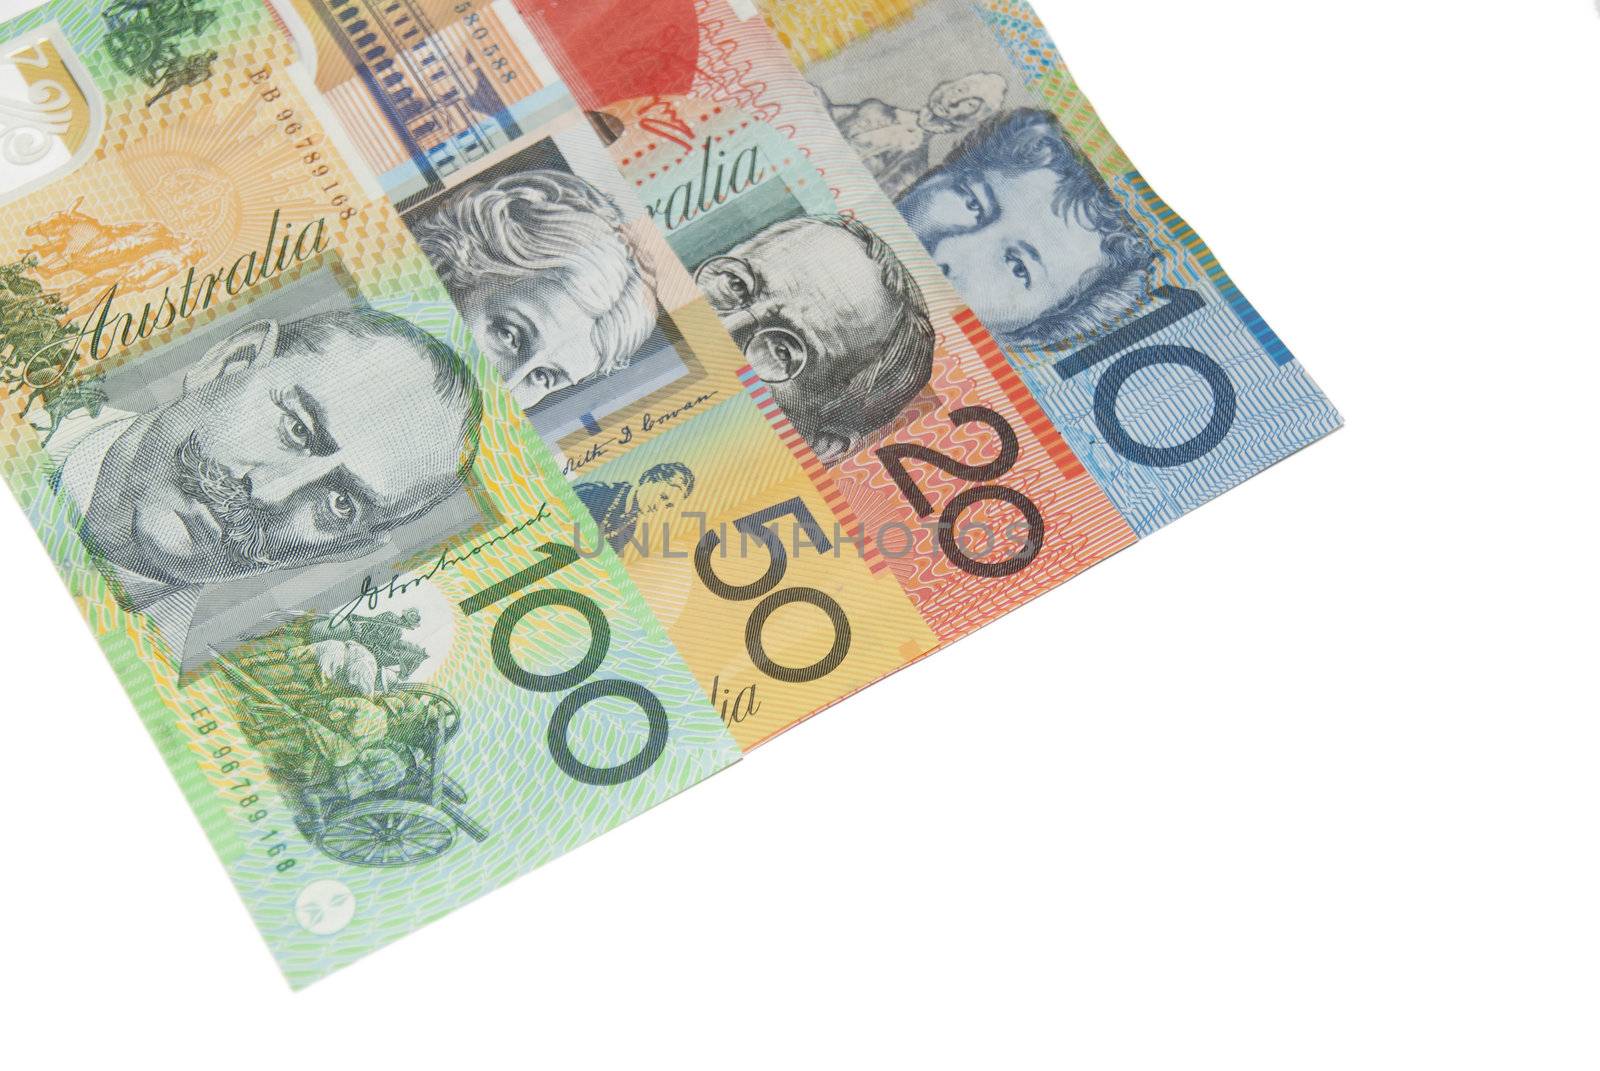 Australian money by wojciechkozlowski